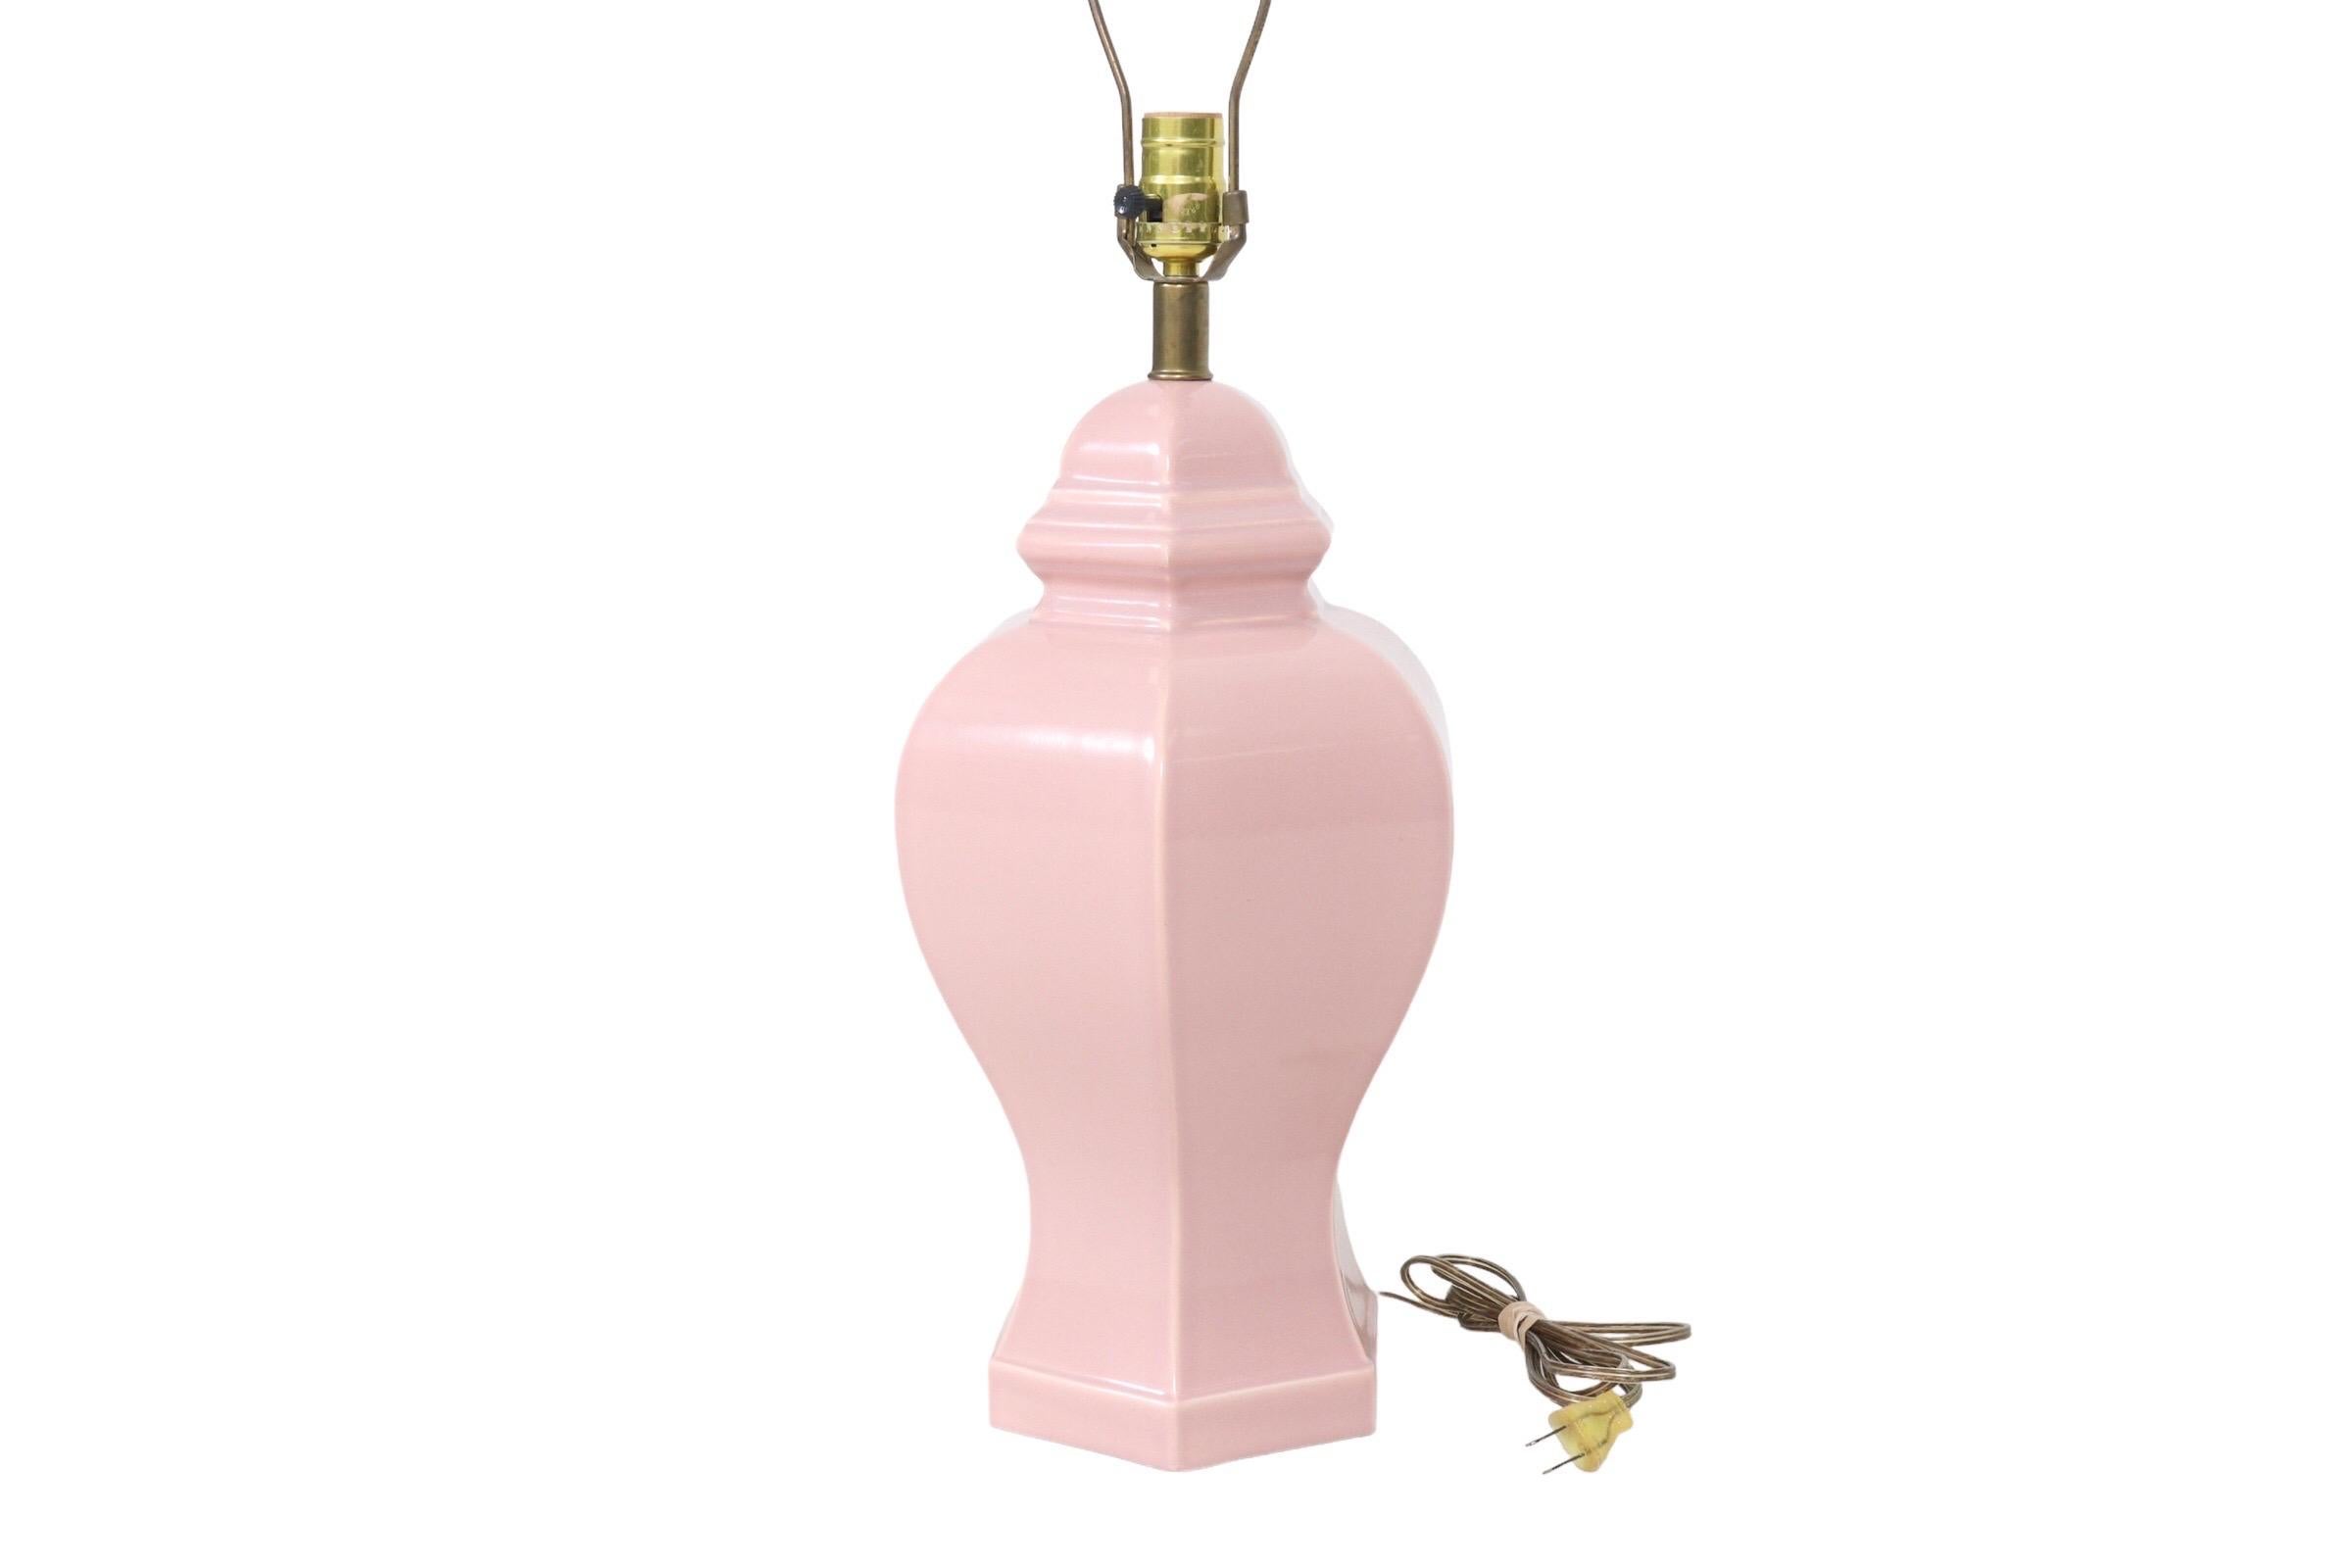 Lampe de table en céramique rose pâle. Coulée dans une forme traditionnelle avec un corps hexagonal, un capuchon biseauté et une base simple. Mesure 9 